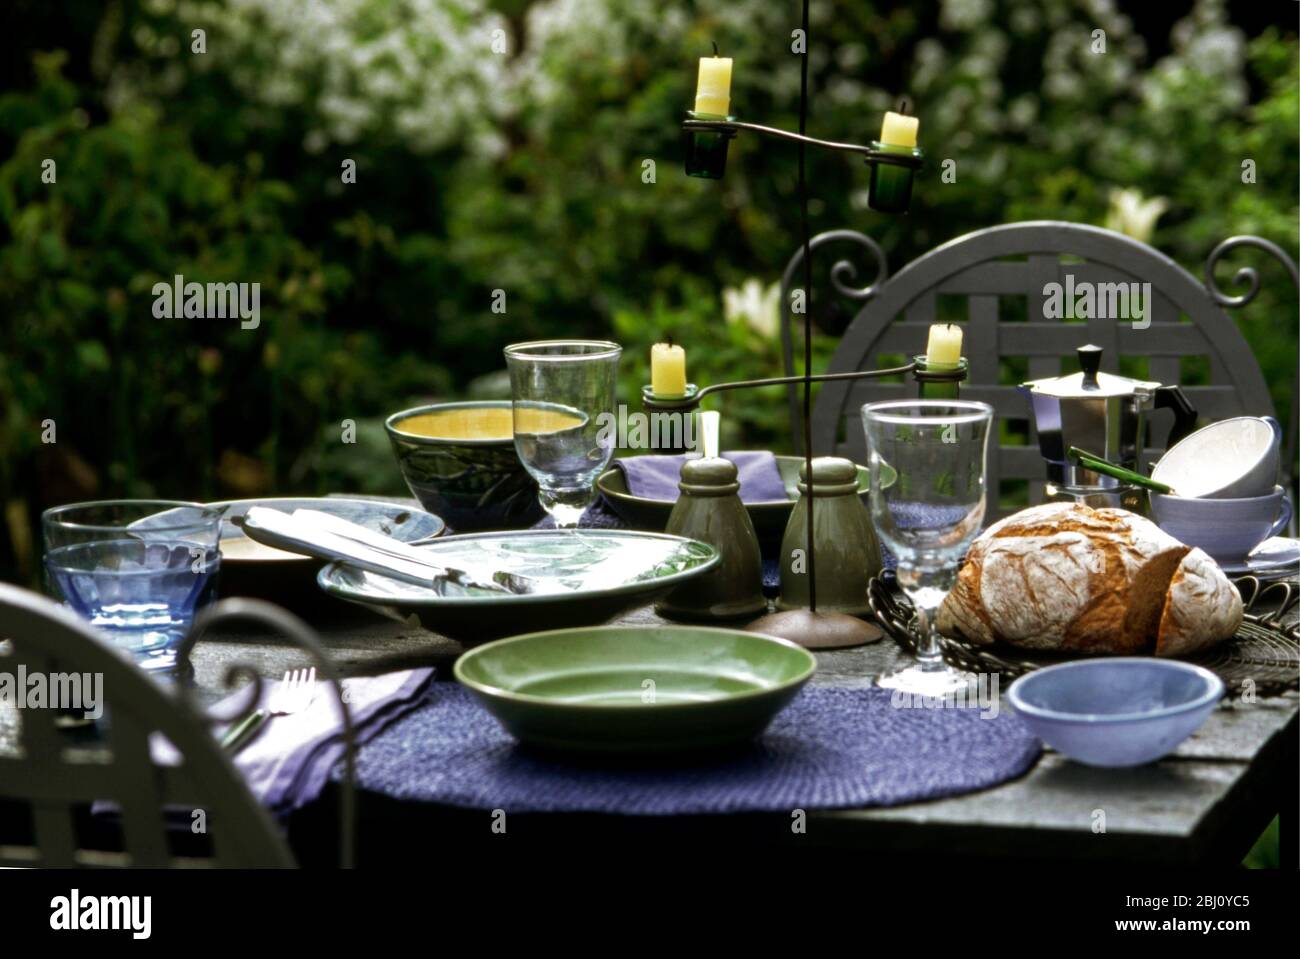 Grüne und blaue Keramik und Glas auf Gartentisch gelegt für Abendessen im Freien - Stockfoto